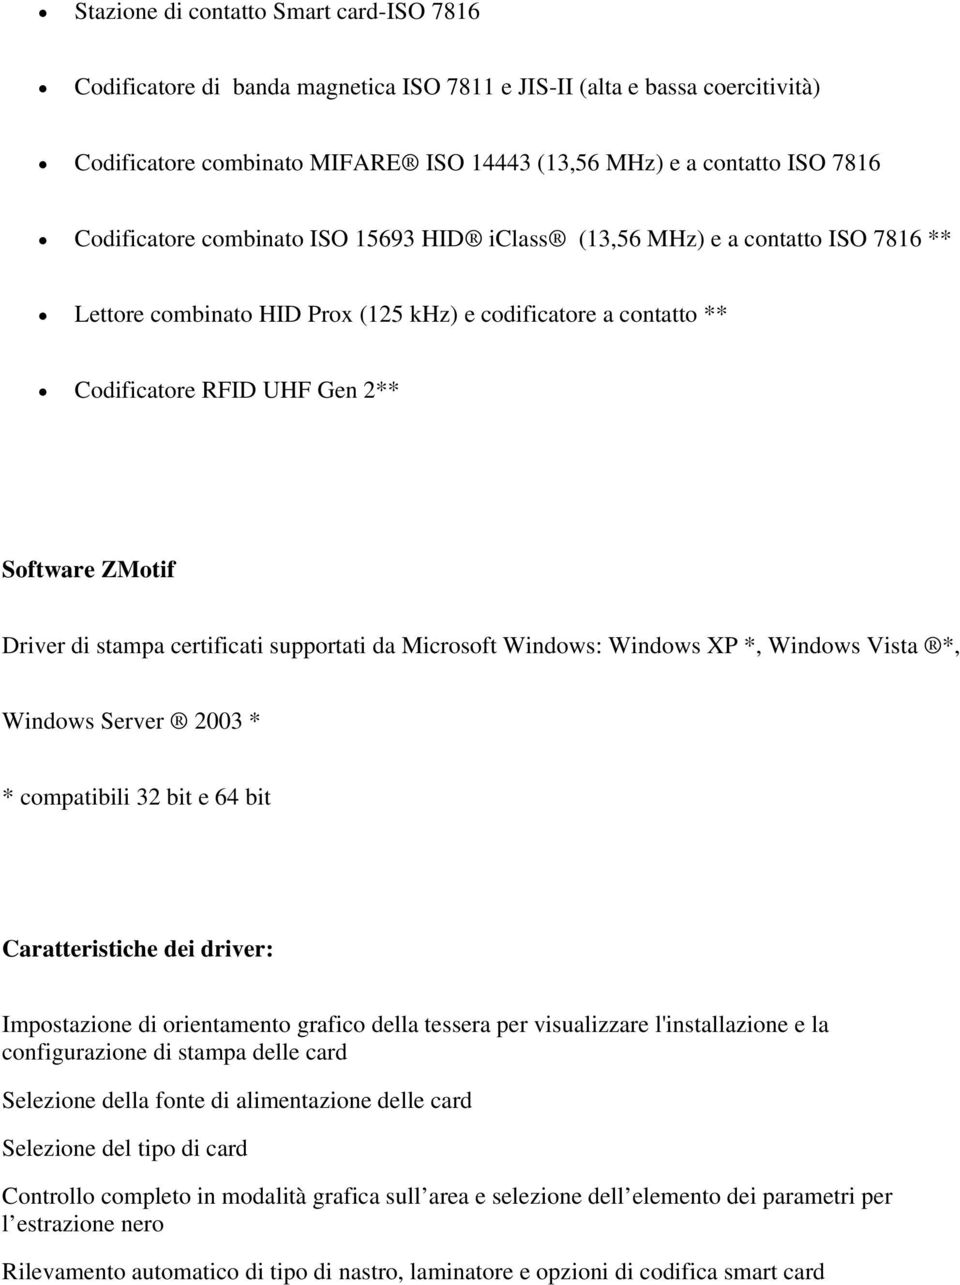 di stampa certificati supportati da Microsoft Windows: Windows XP *, Windows Vista *, Windows Server 2003 * * compatibili 32 bit e 64 bit Caratteristiche dei driver: Impostazione di orientamento